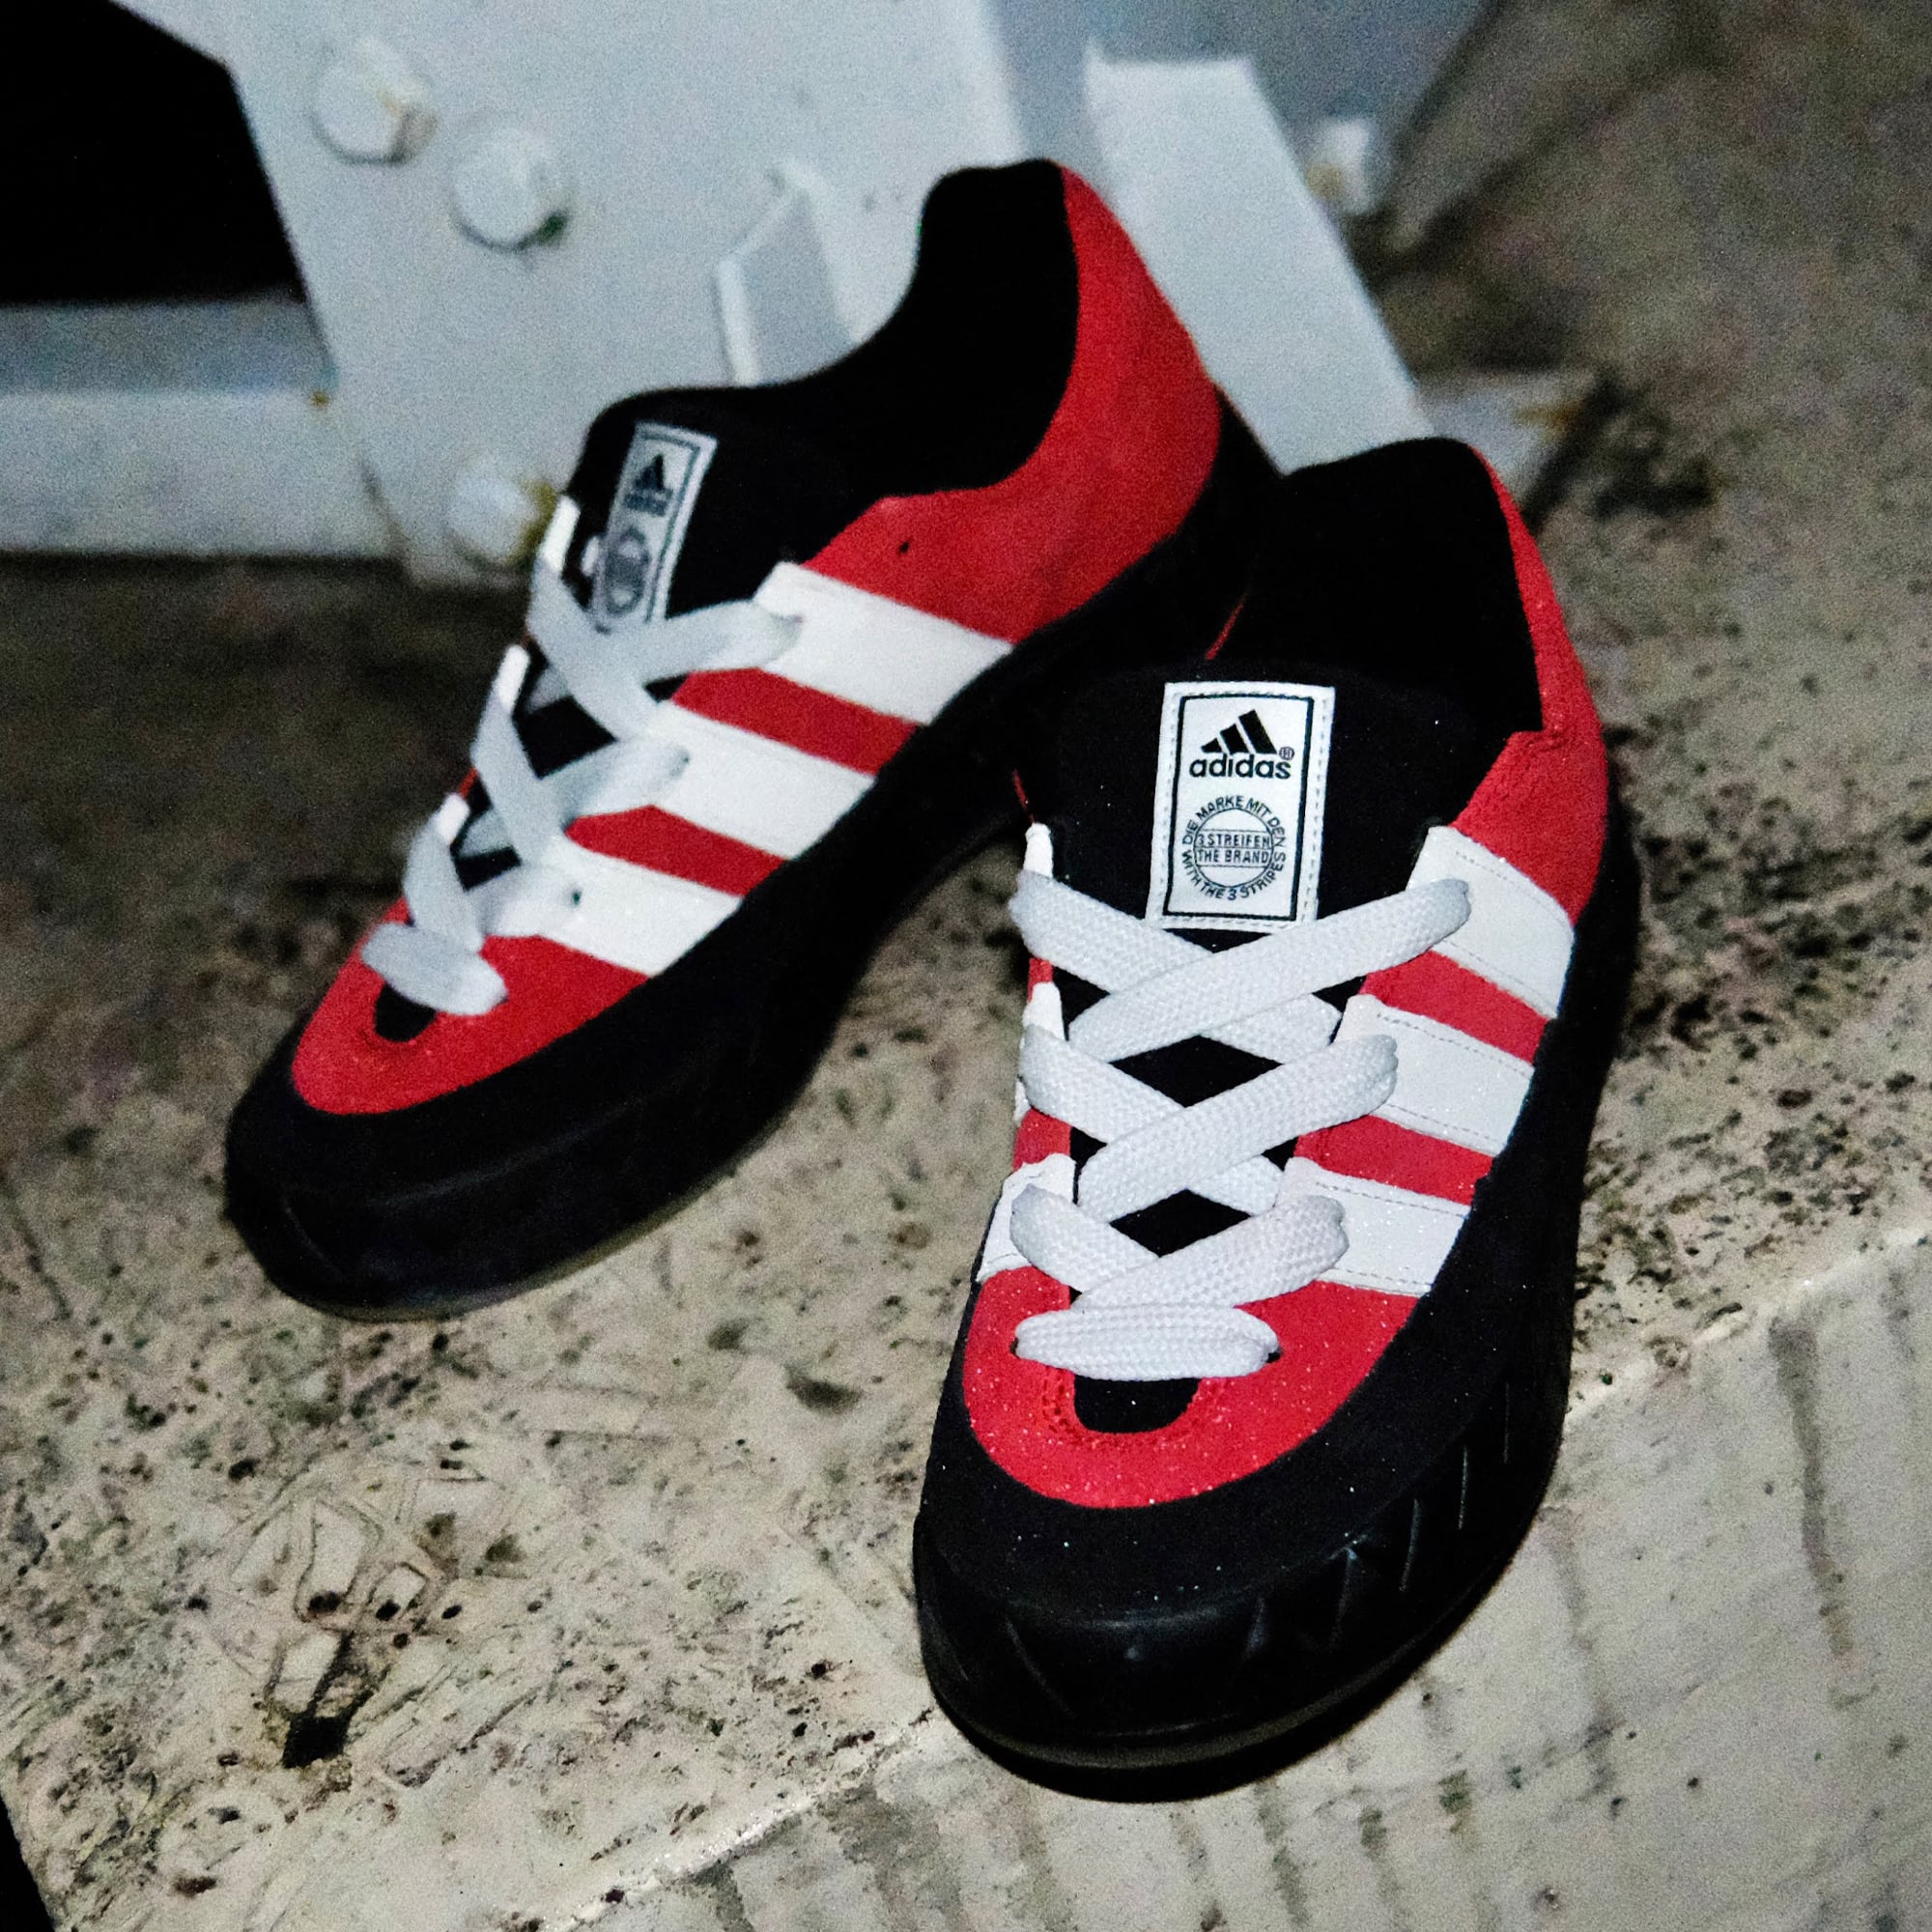 adidas Originals Adimatic Power Red レッド